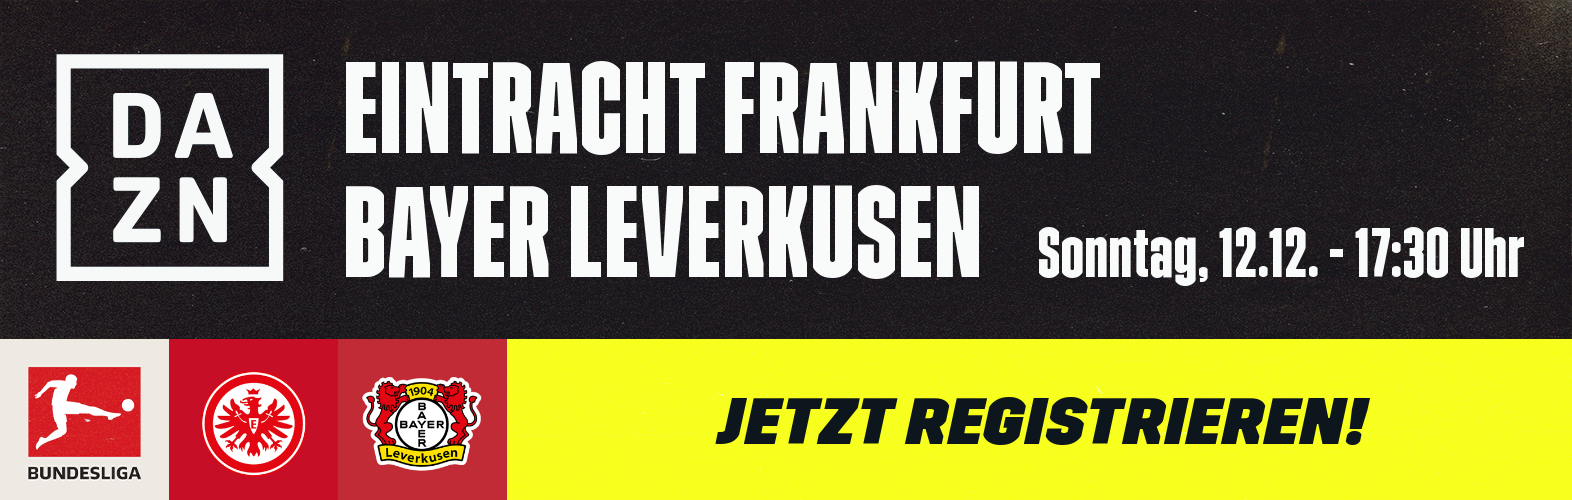 Eintracht Frankfurt Bayer Leverkusen 12.12. Banner